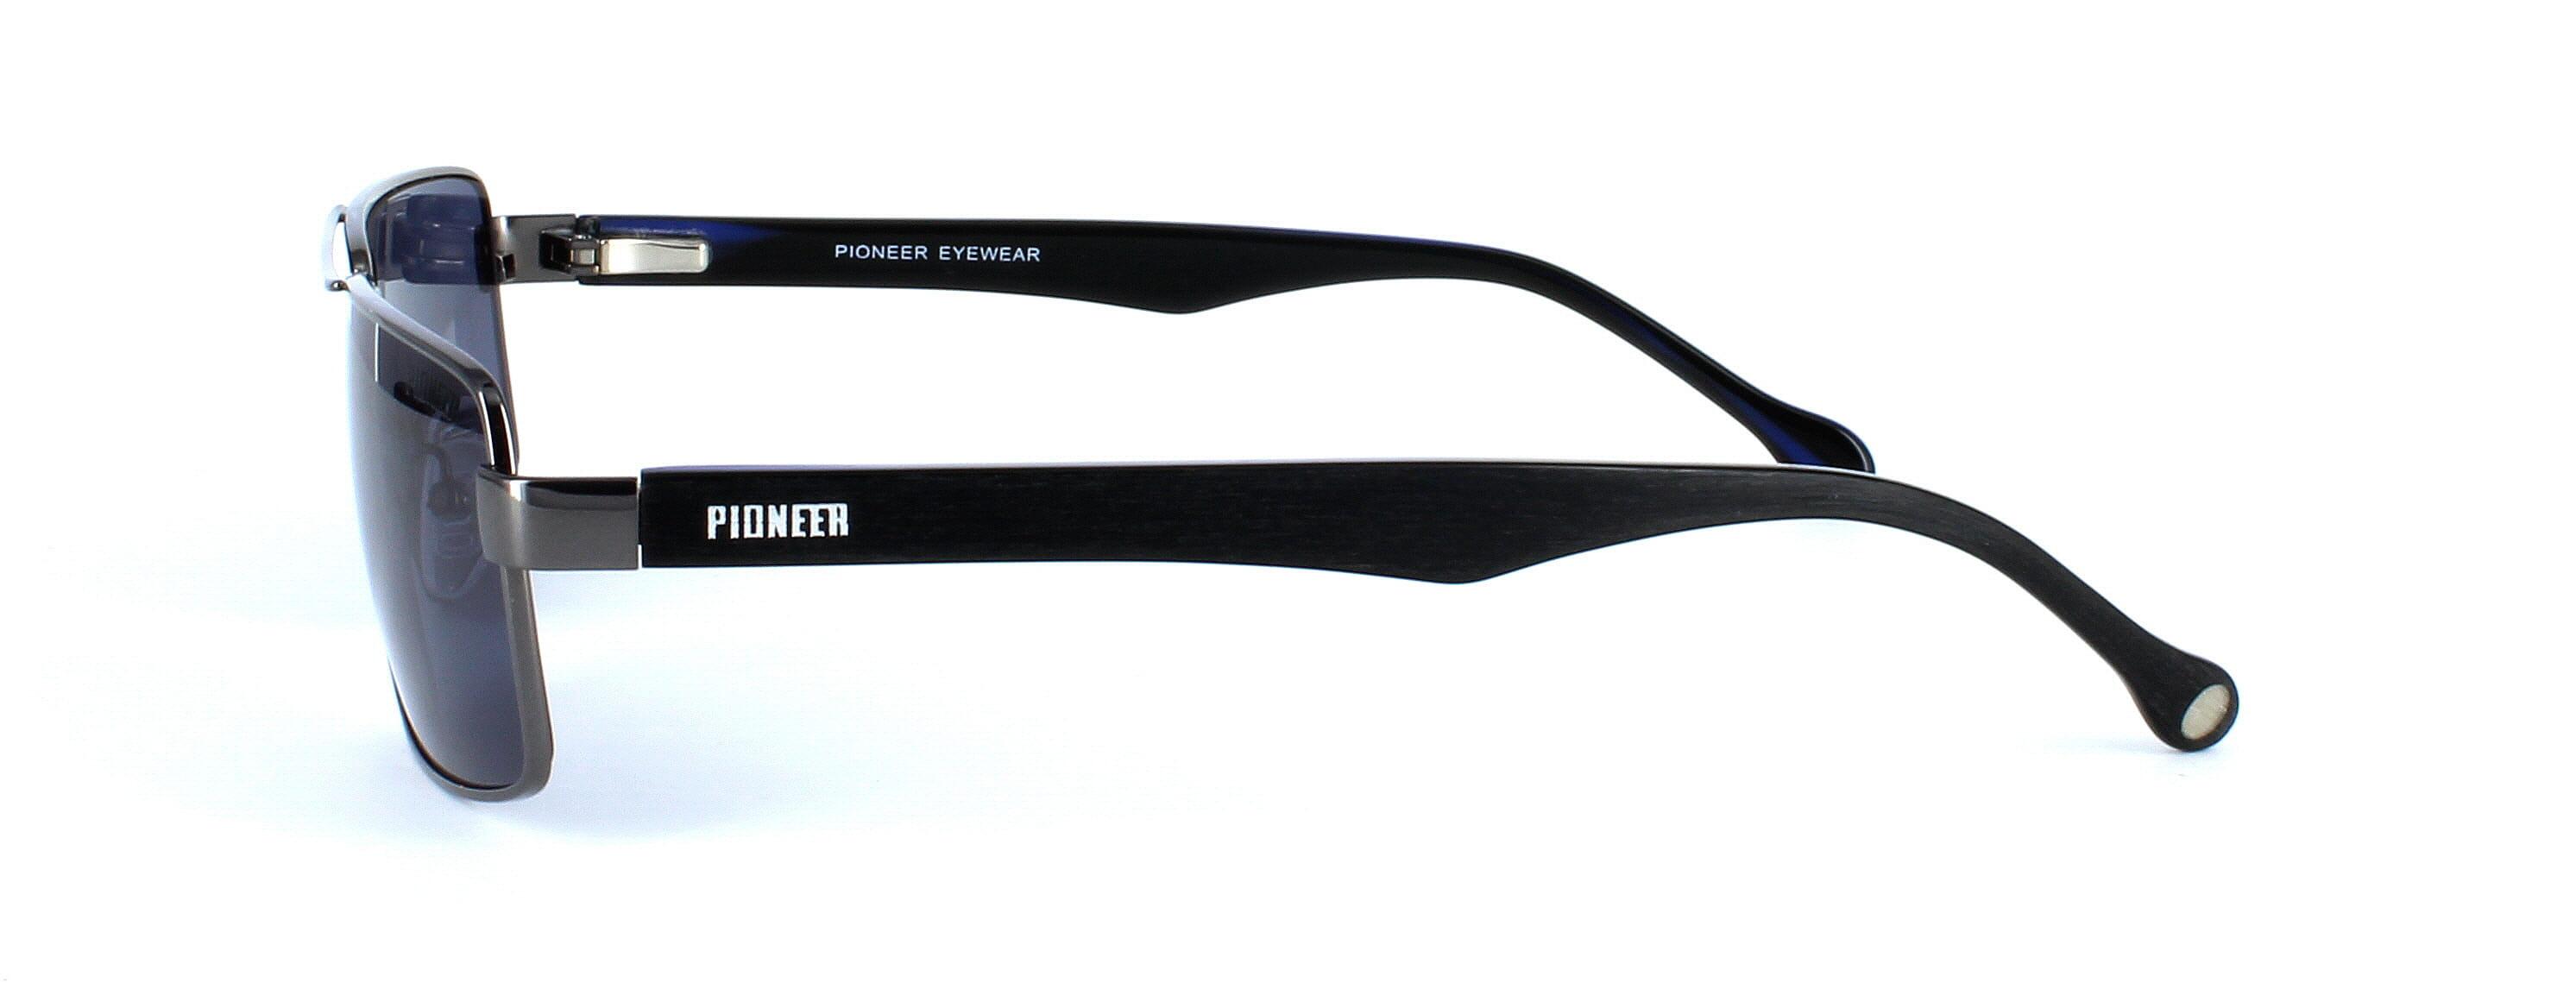 Odonata - Unisex aviator style prescription sunglasses in gunmetal - image view 2